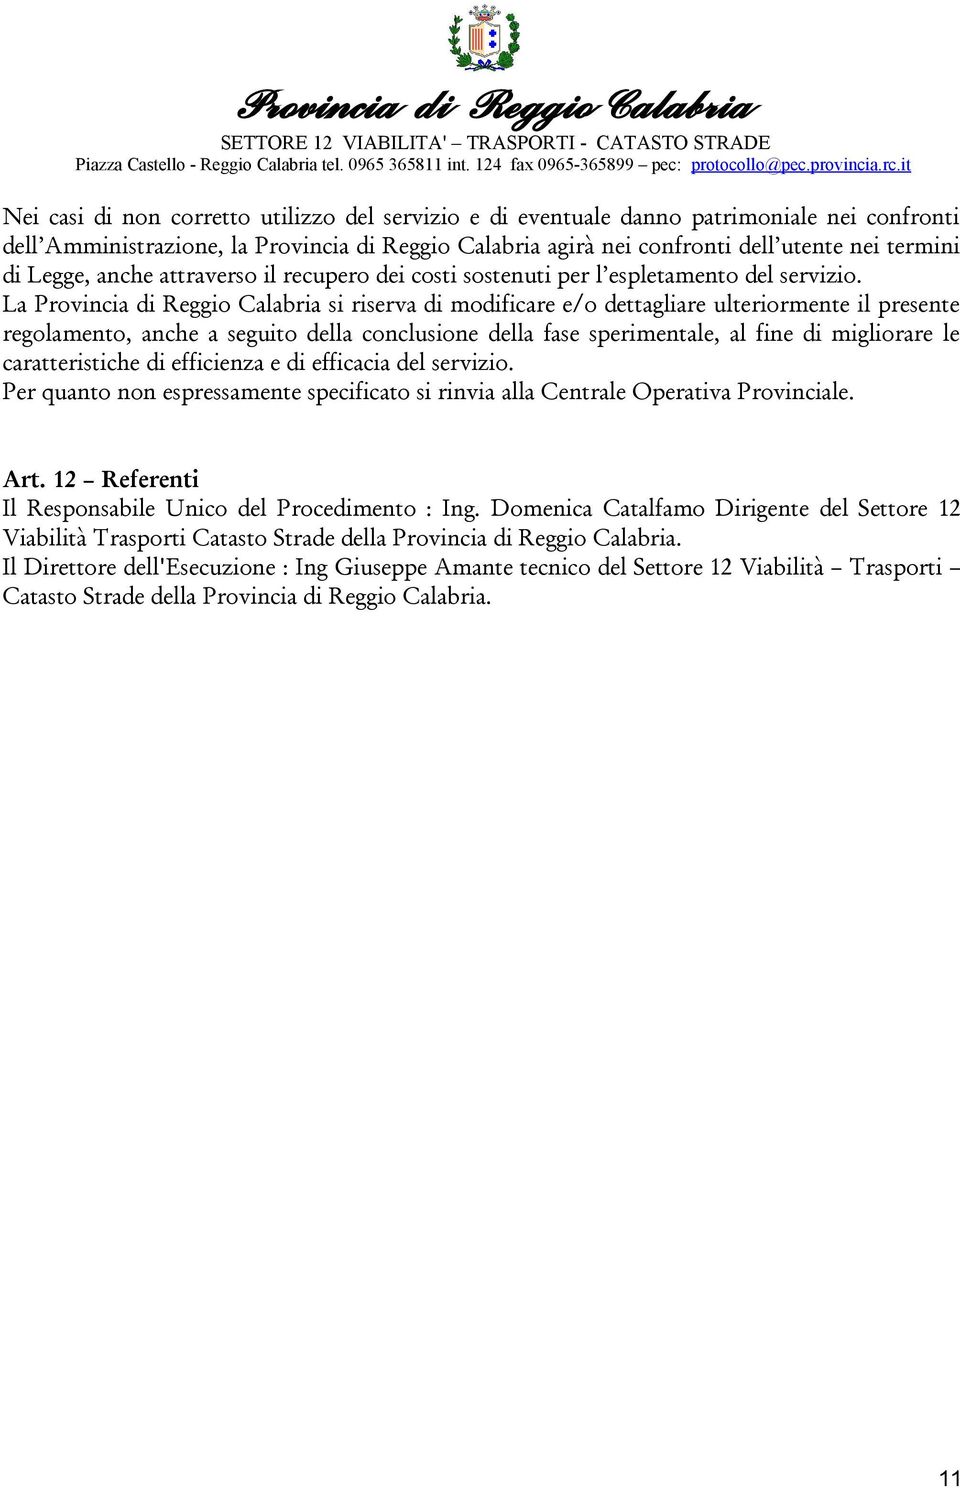 La Provincia di Reggio Calabria si riserva di modificare e/o dettagliare ulteriormente il presente regolamento, anche a seguito della conclusione della fase sperimentale, al fine di migliorare le